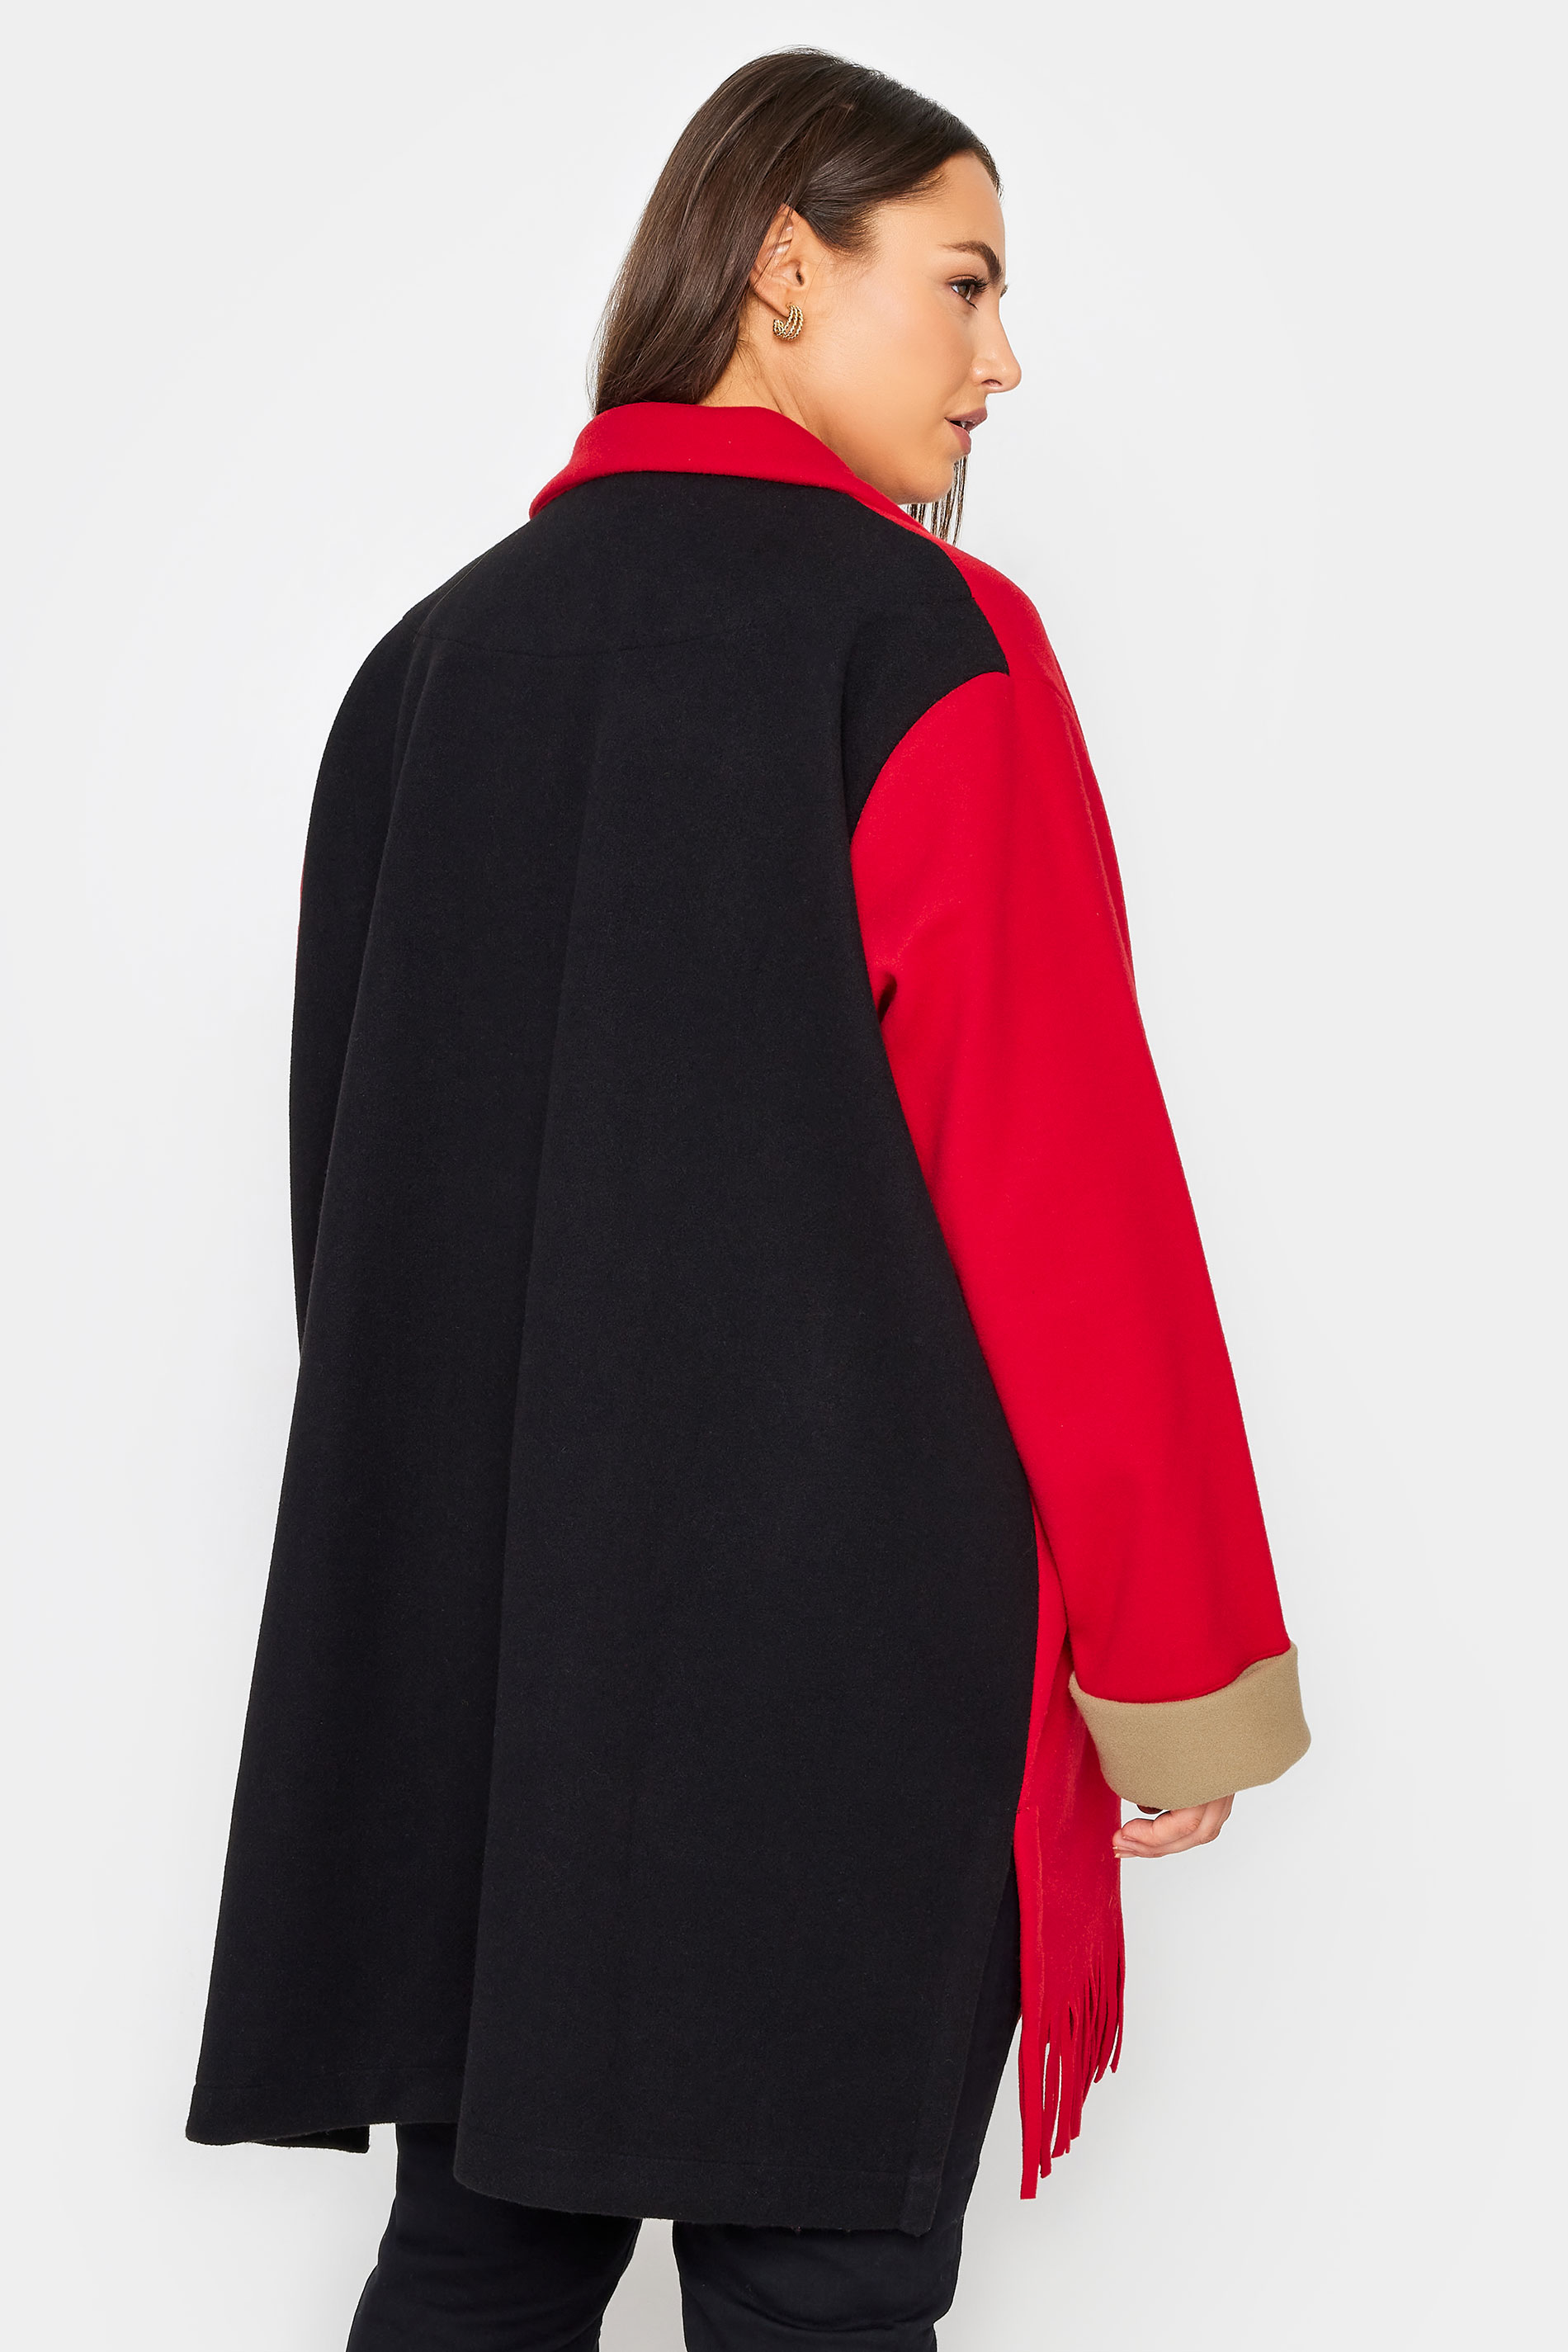 Manon Baptiste Red & Black Oversized Fringe Jacket 3